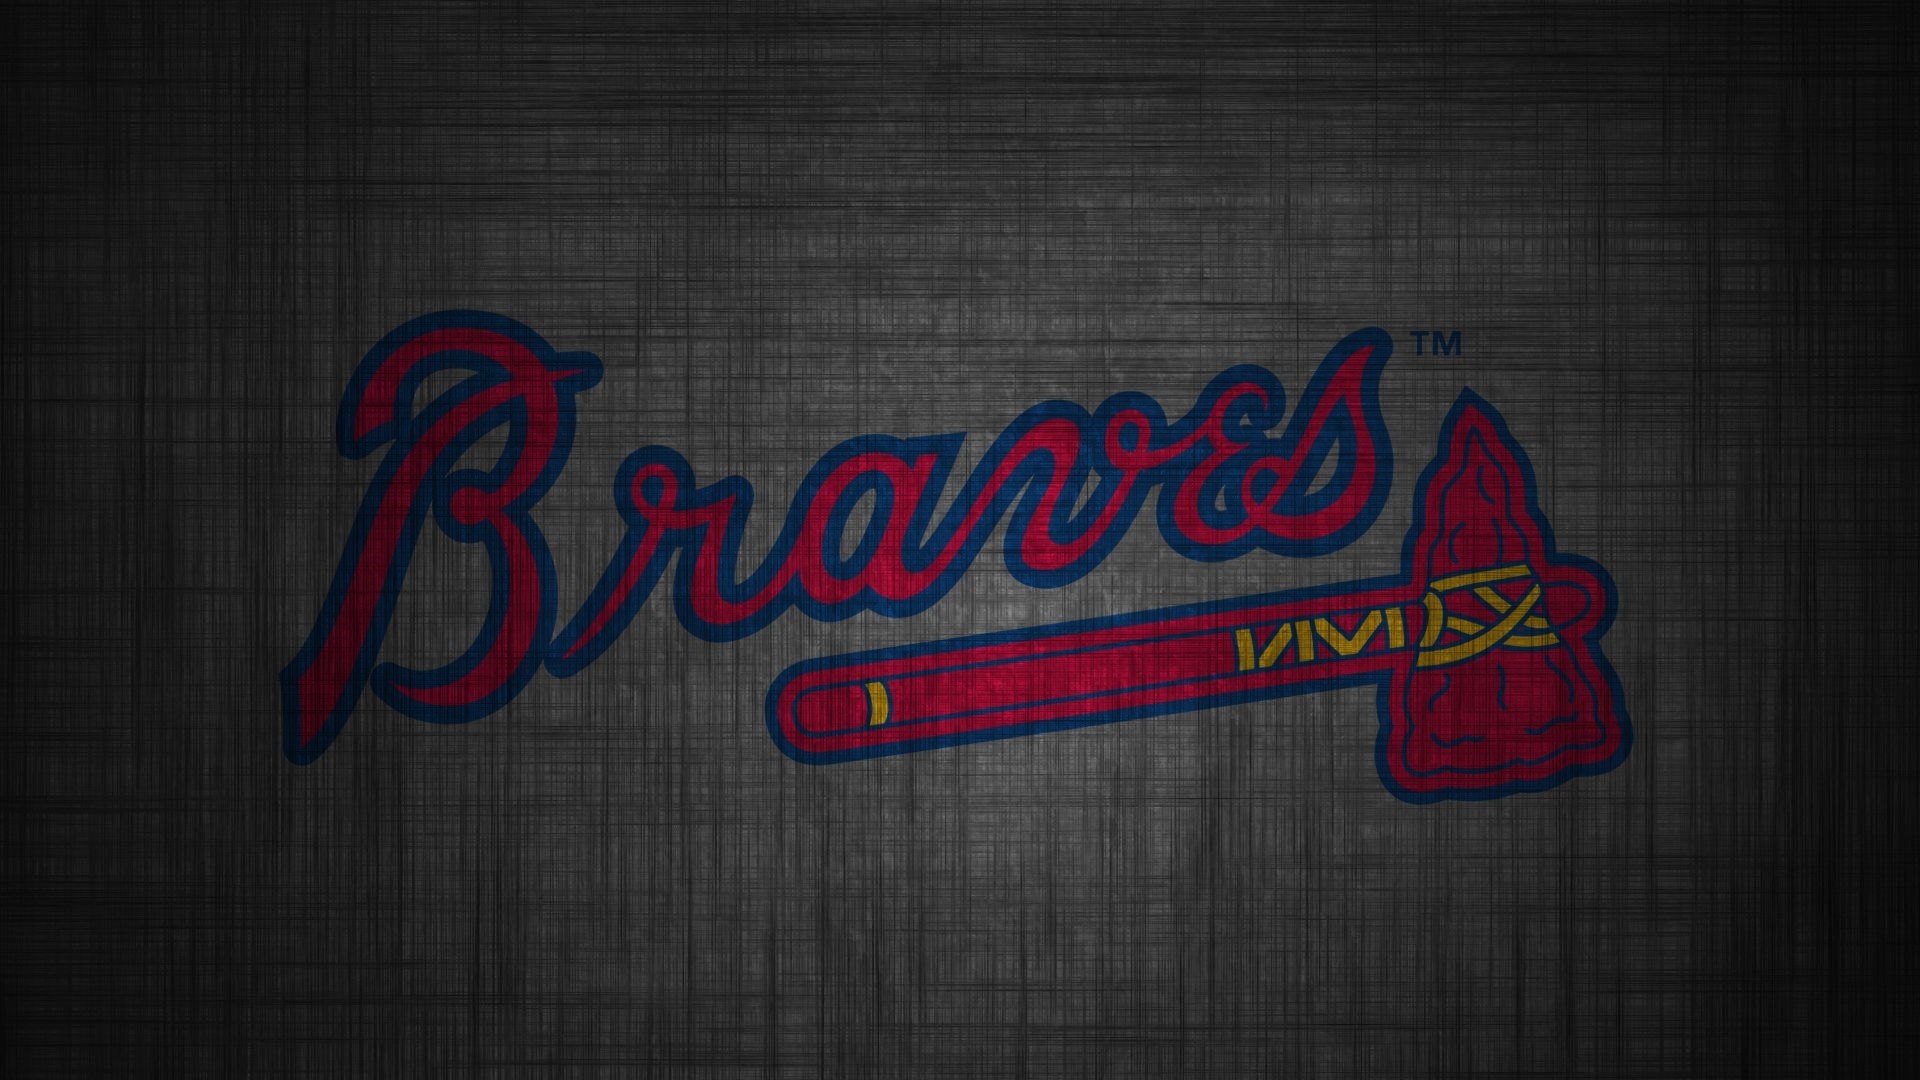 Atlanta Braves Image